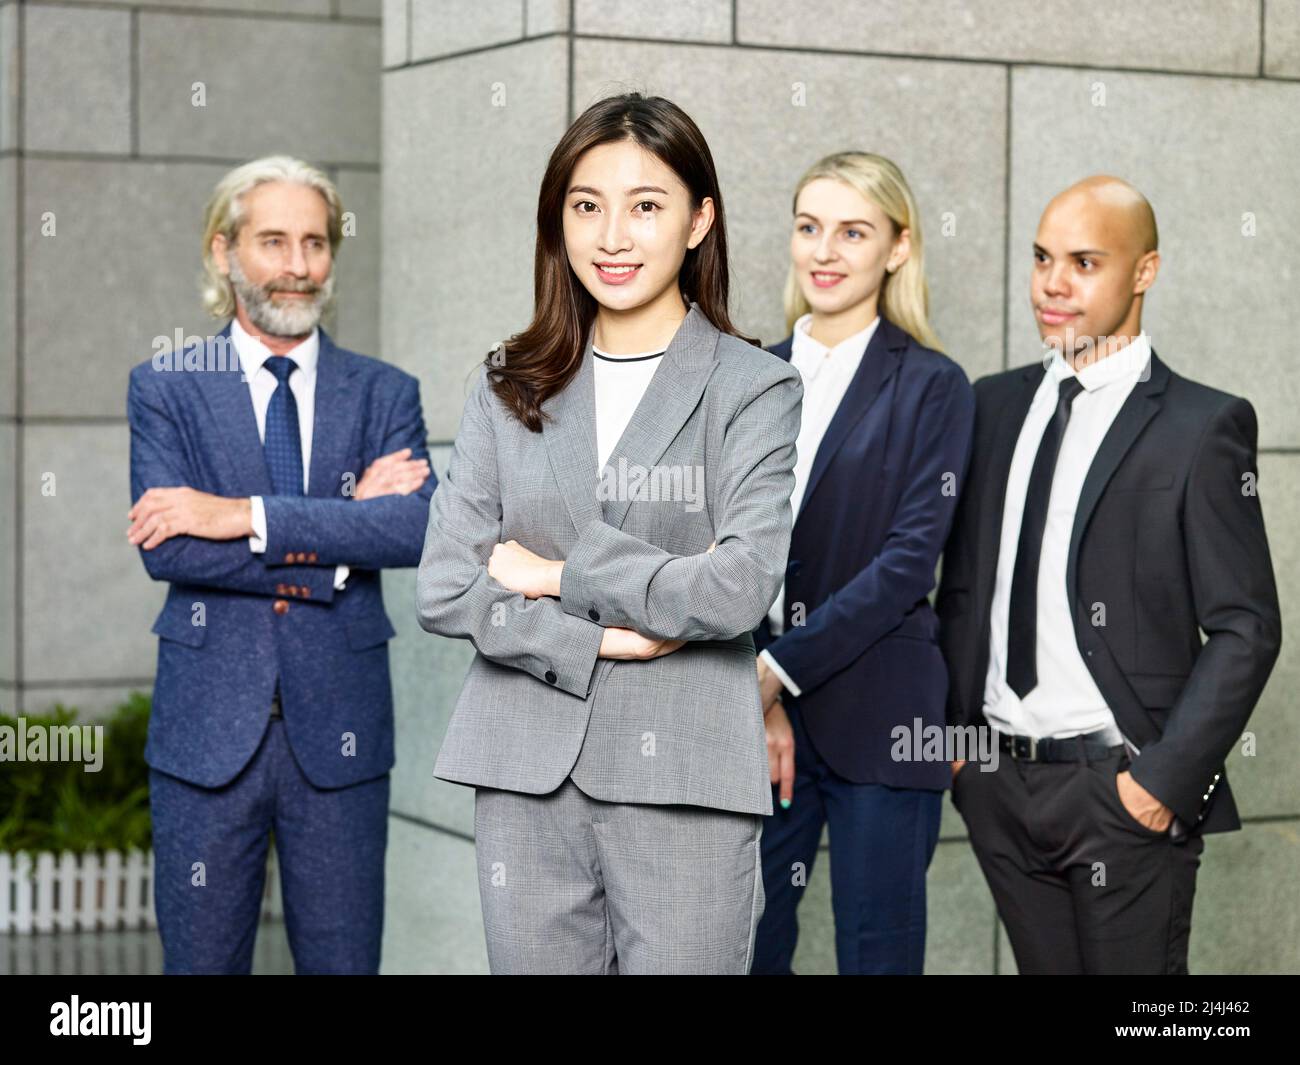 Porträt eines Teams aus multinationalen und multiethnischen Unternehmensleuten, die lächelnd auf die Kamera blicken Stockfoto